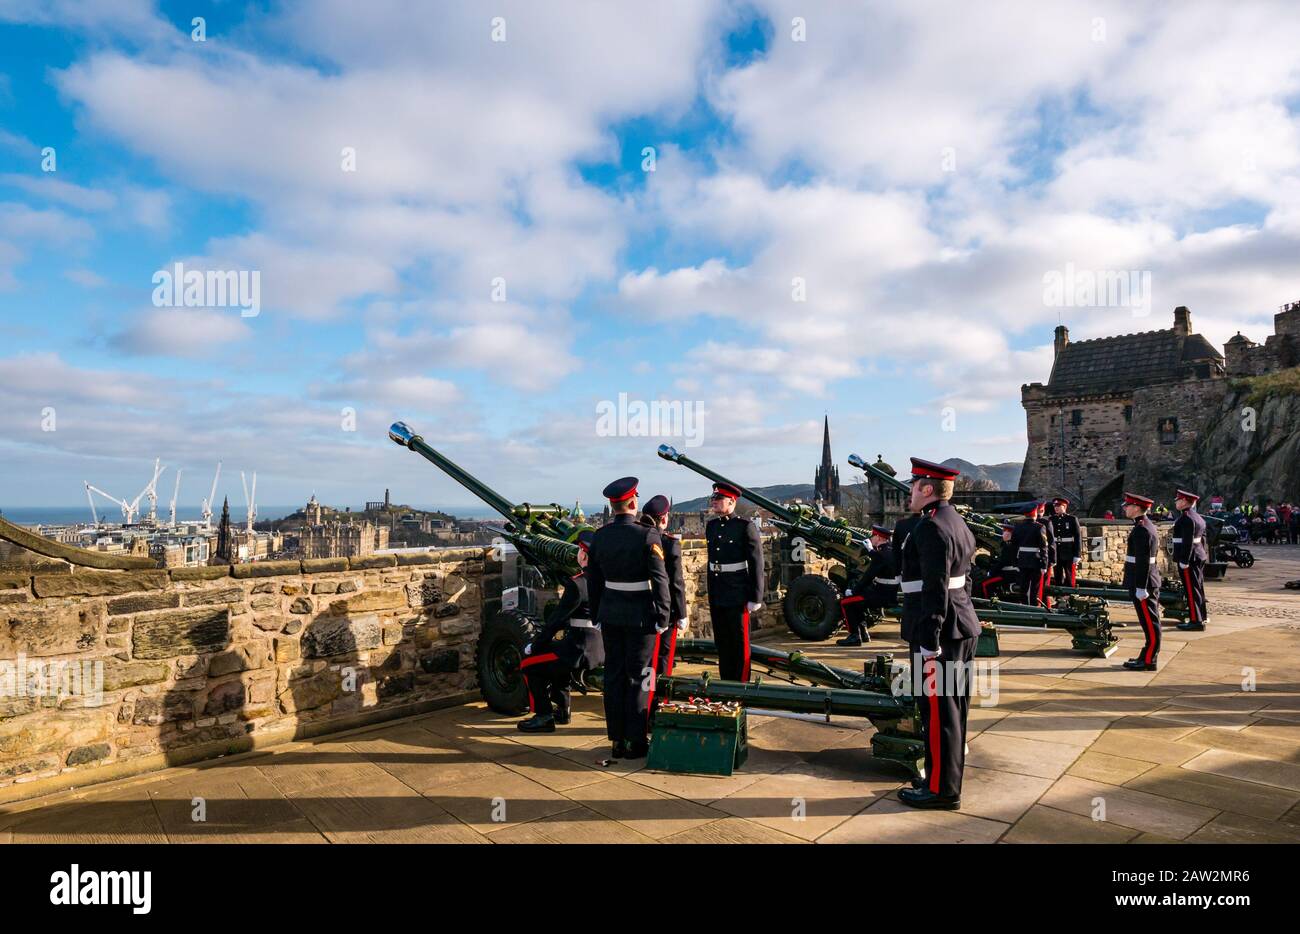 Edinburgh Castle, Édimbourg, Écosse, Royaume-Uni. 06 février 2020. 21 Salute d'armes : le salut de l'Artillerie royale du 26 Régiment sur le mont Mills marque l'occasion de l'accession de la Reine HM au trône le 6 février 1952, il y a 68 ans, Le régiment d'artillerie est à l'attention Banque D'Images